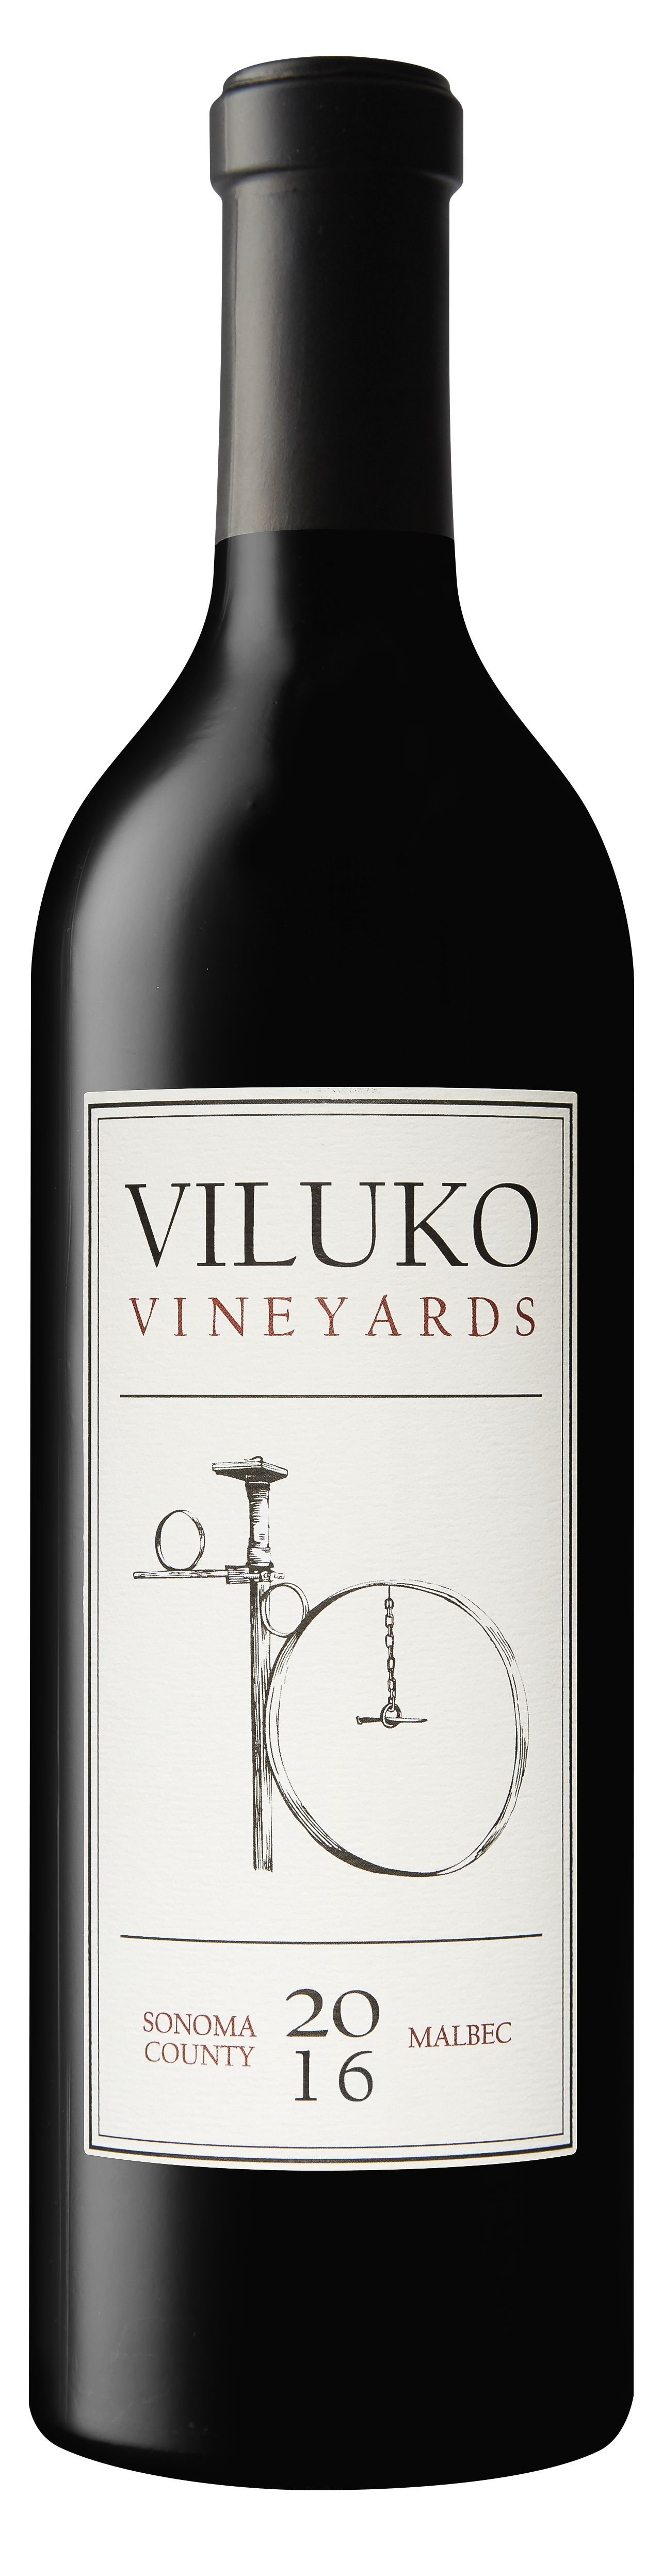 2016 Viluko Vineyards Malbec